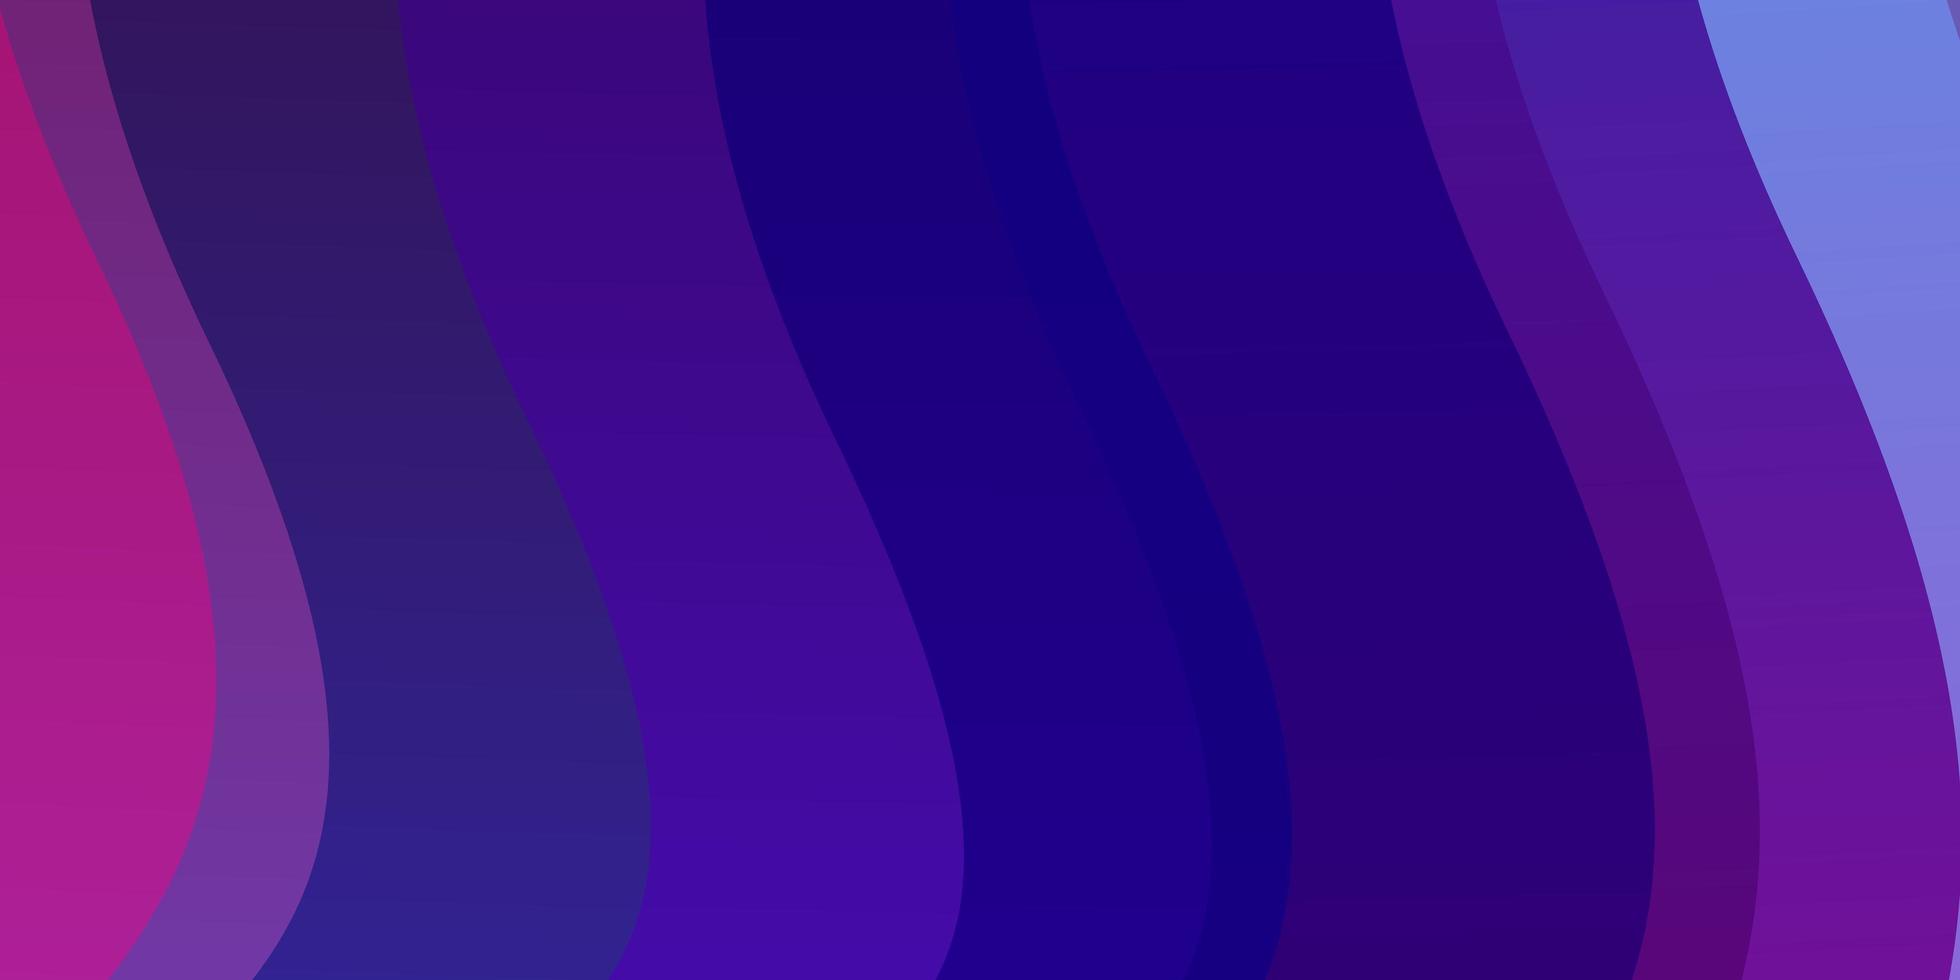 mörkrosa blå vektormönster med kurvor vektor